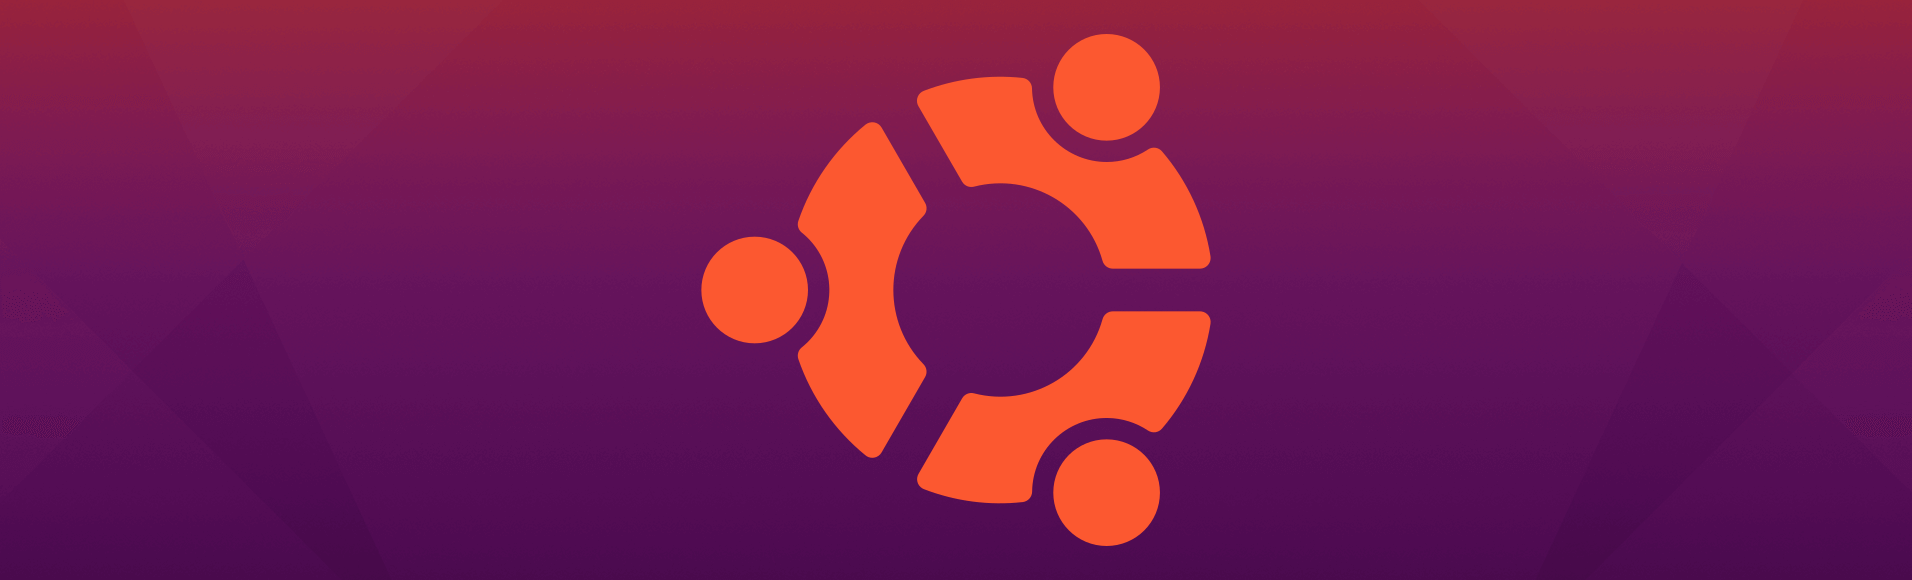 Como instalar o vfxAlert no Ubuntu